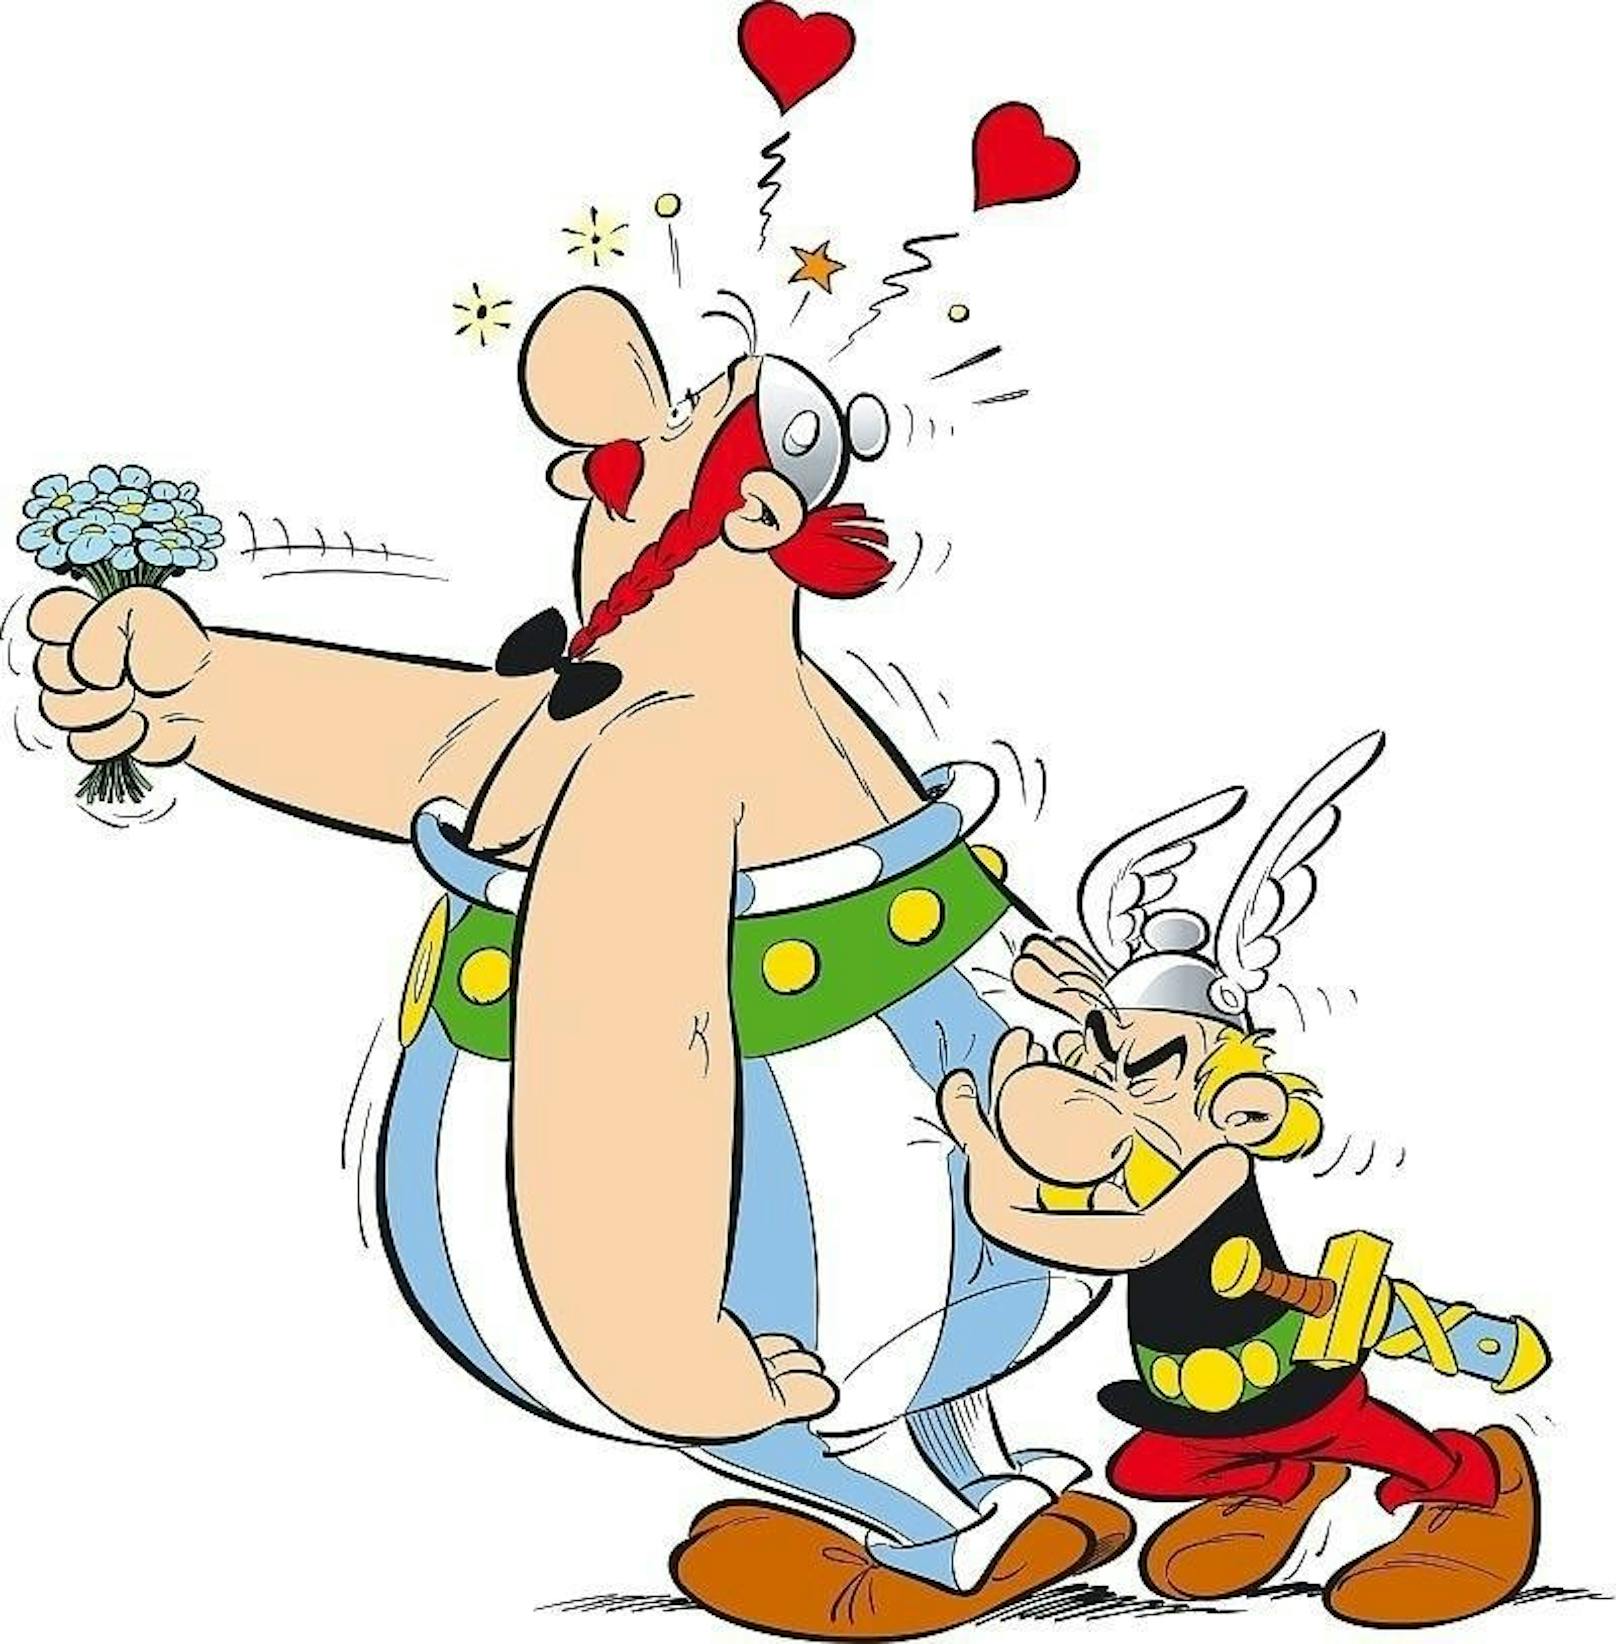 Ende 1968 erschien "Asterix der Gallier" erstmals beim deutschen Ehapa Verlag. Nach dem 36. Band (Das Papyrus des Asterix) hatte der Verlag rund 130 Millionen Exemplare verkauft. 

In Sammlerkreisen ist die Asterix-Erstausgabe eine gesuchte Rarität, die in sehr gutem Zustand im Comic Preiskatalog 2017 mit einem Wert von 800 Euro abgegeben wird.